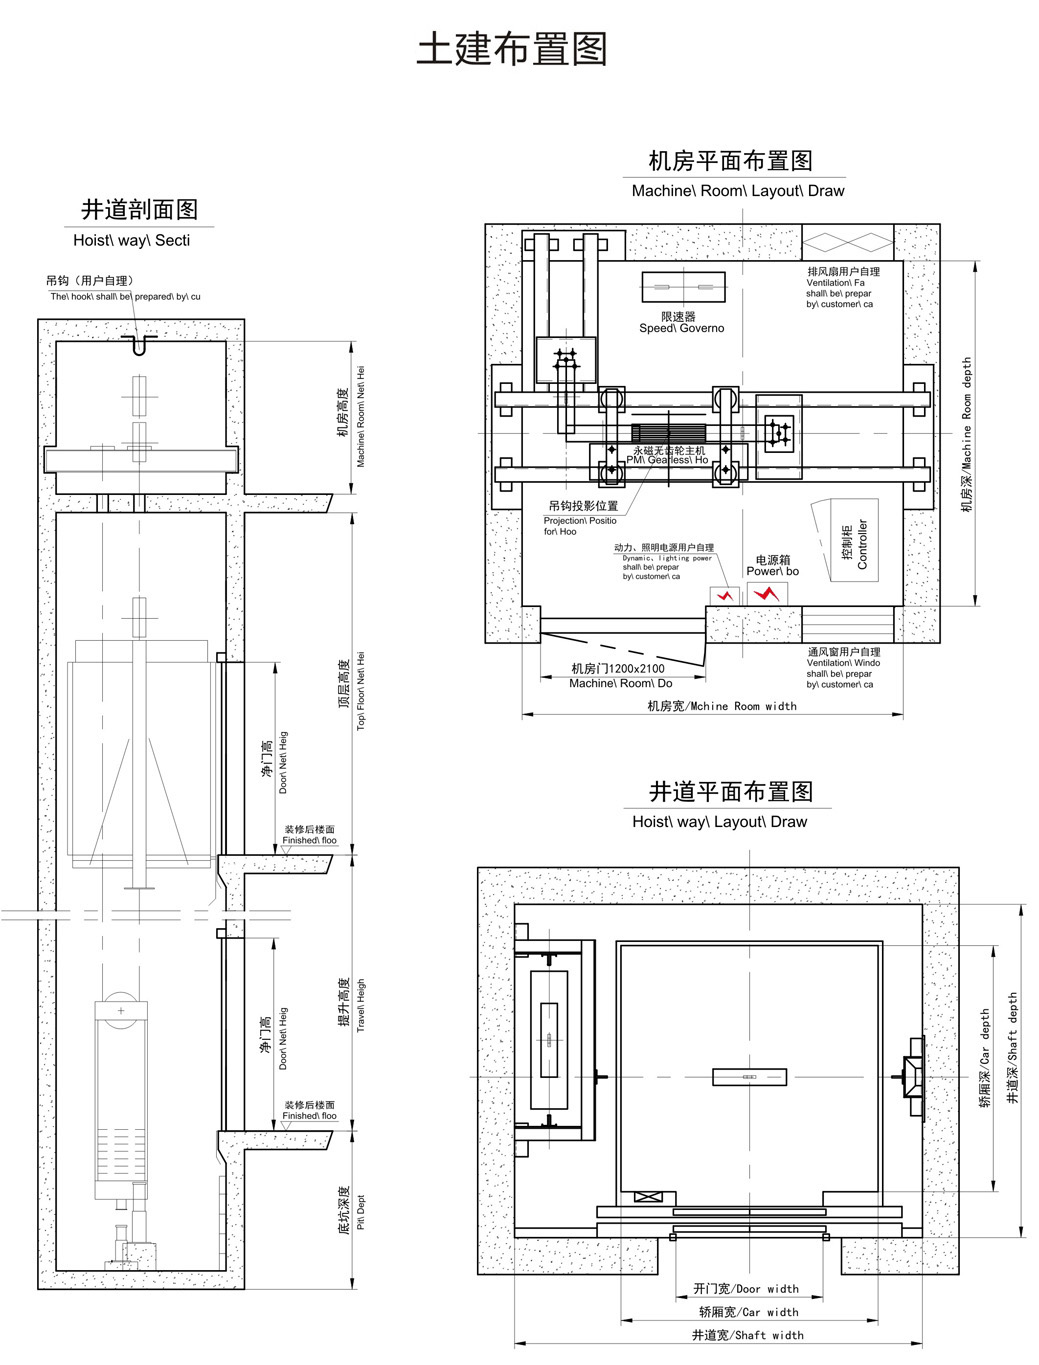 汽车电梯-sdj-021-广东讯达电梯有限公司